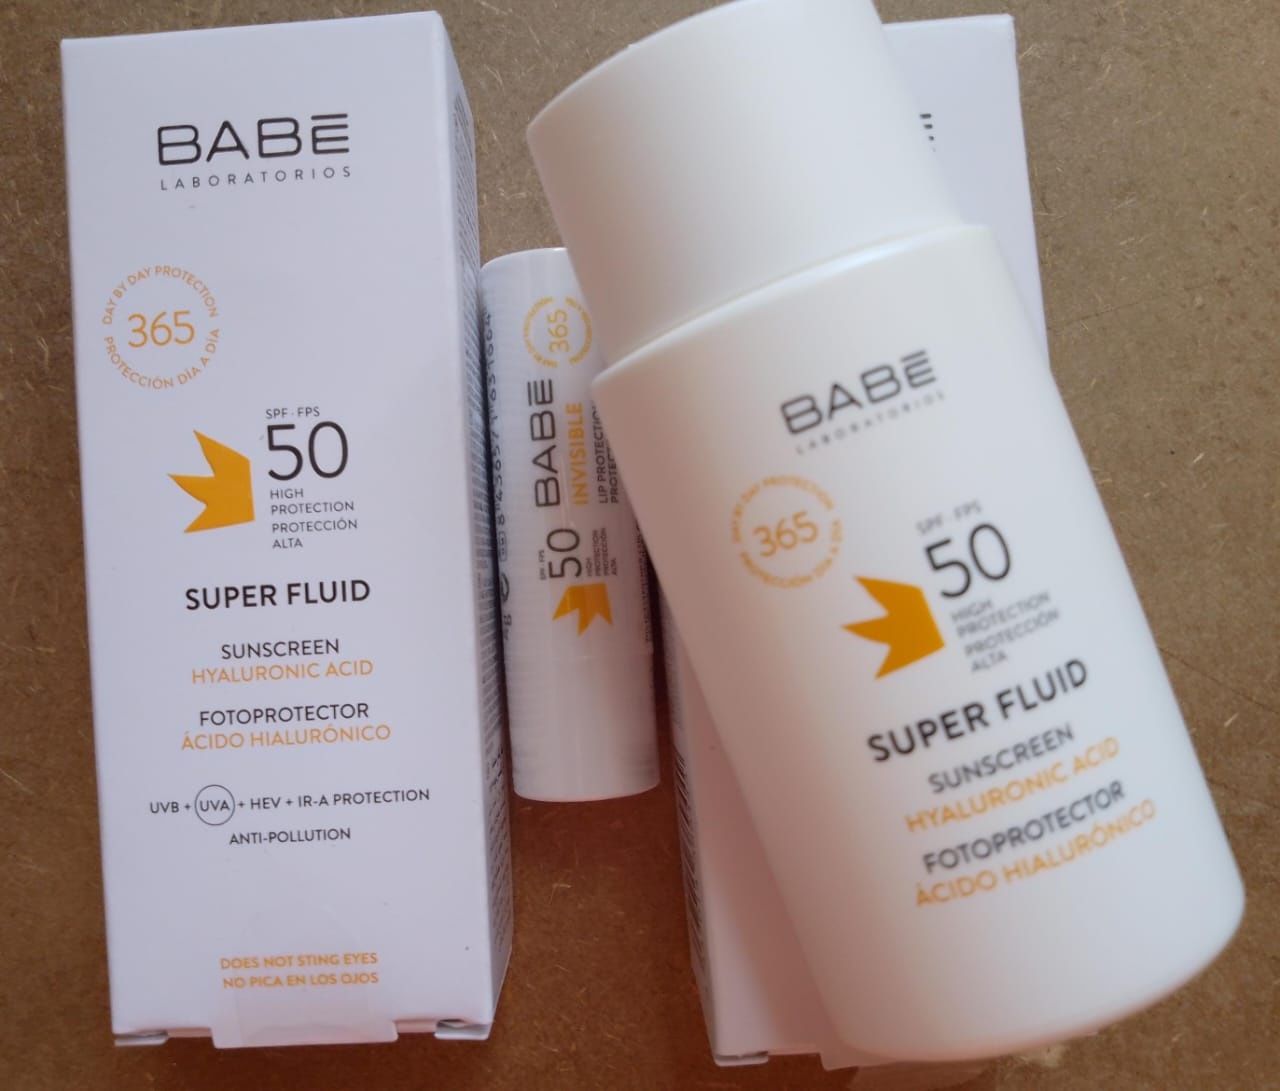 Сонцезахиснй флюїд spf 50 для всіх типів шкіри Babe Laboratories